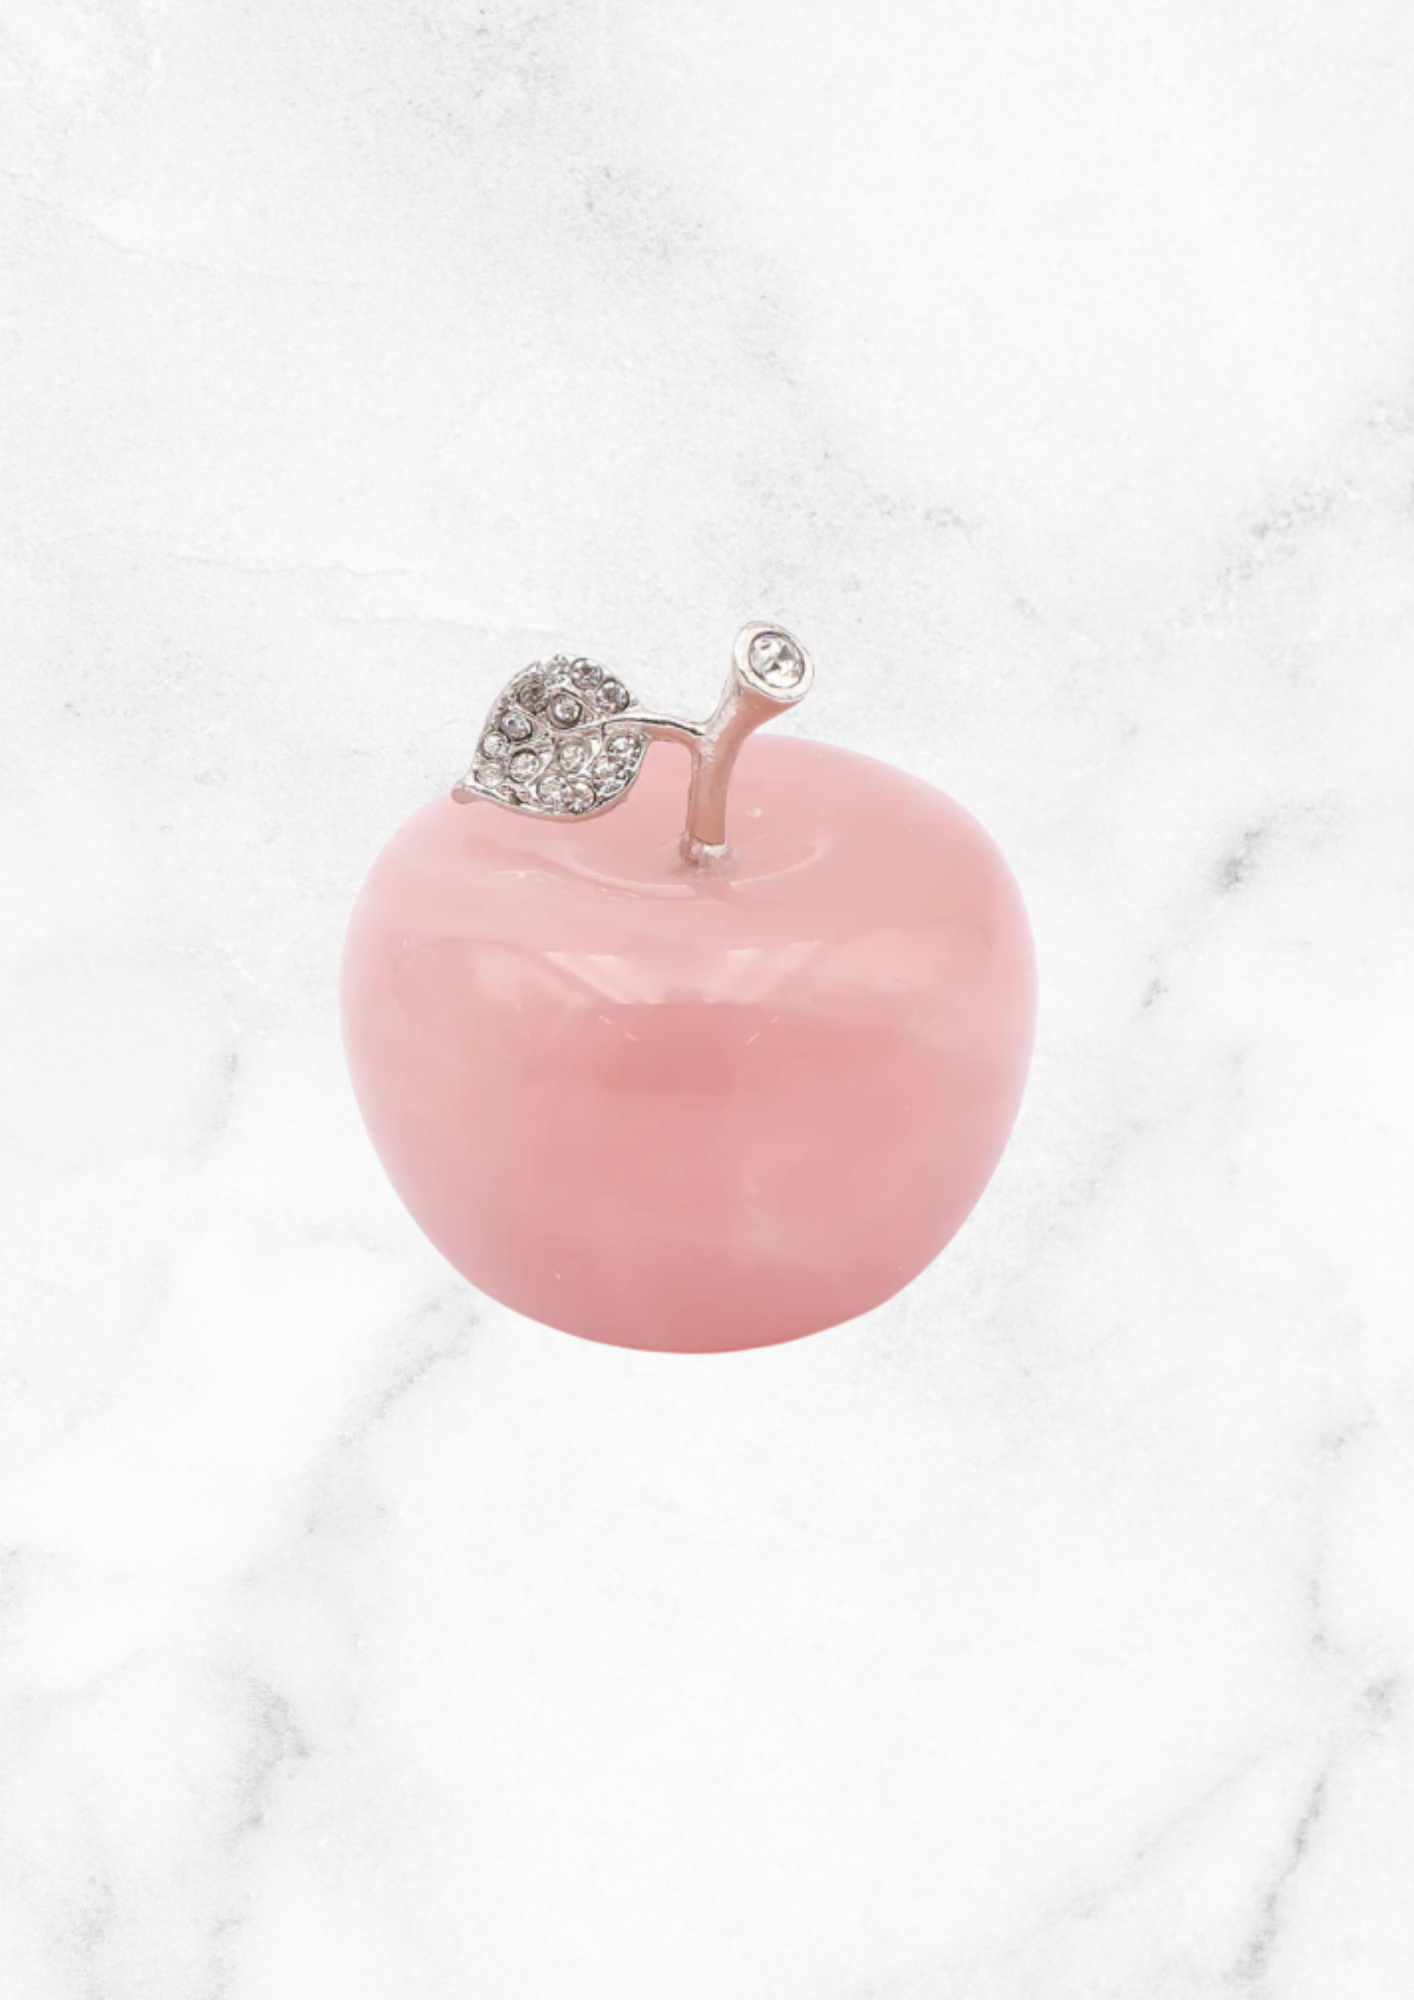 Apple in rose quartz